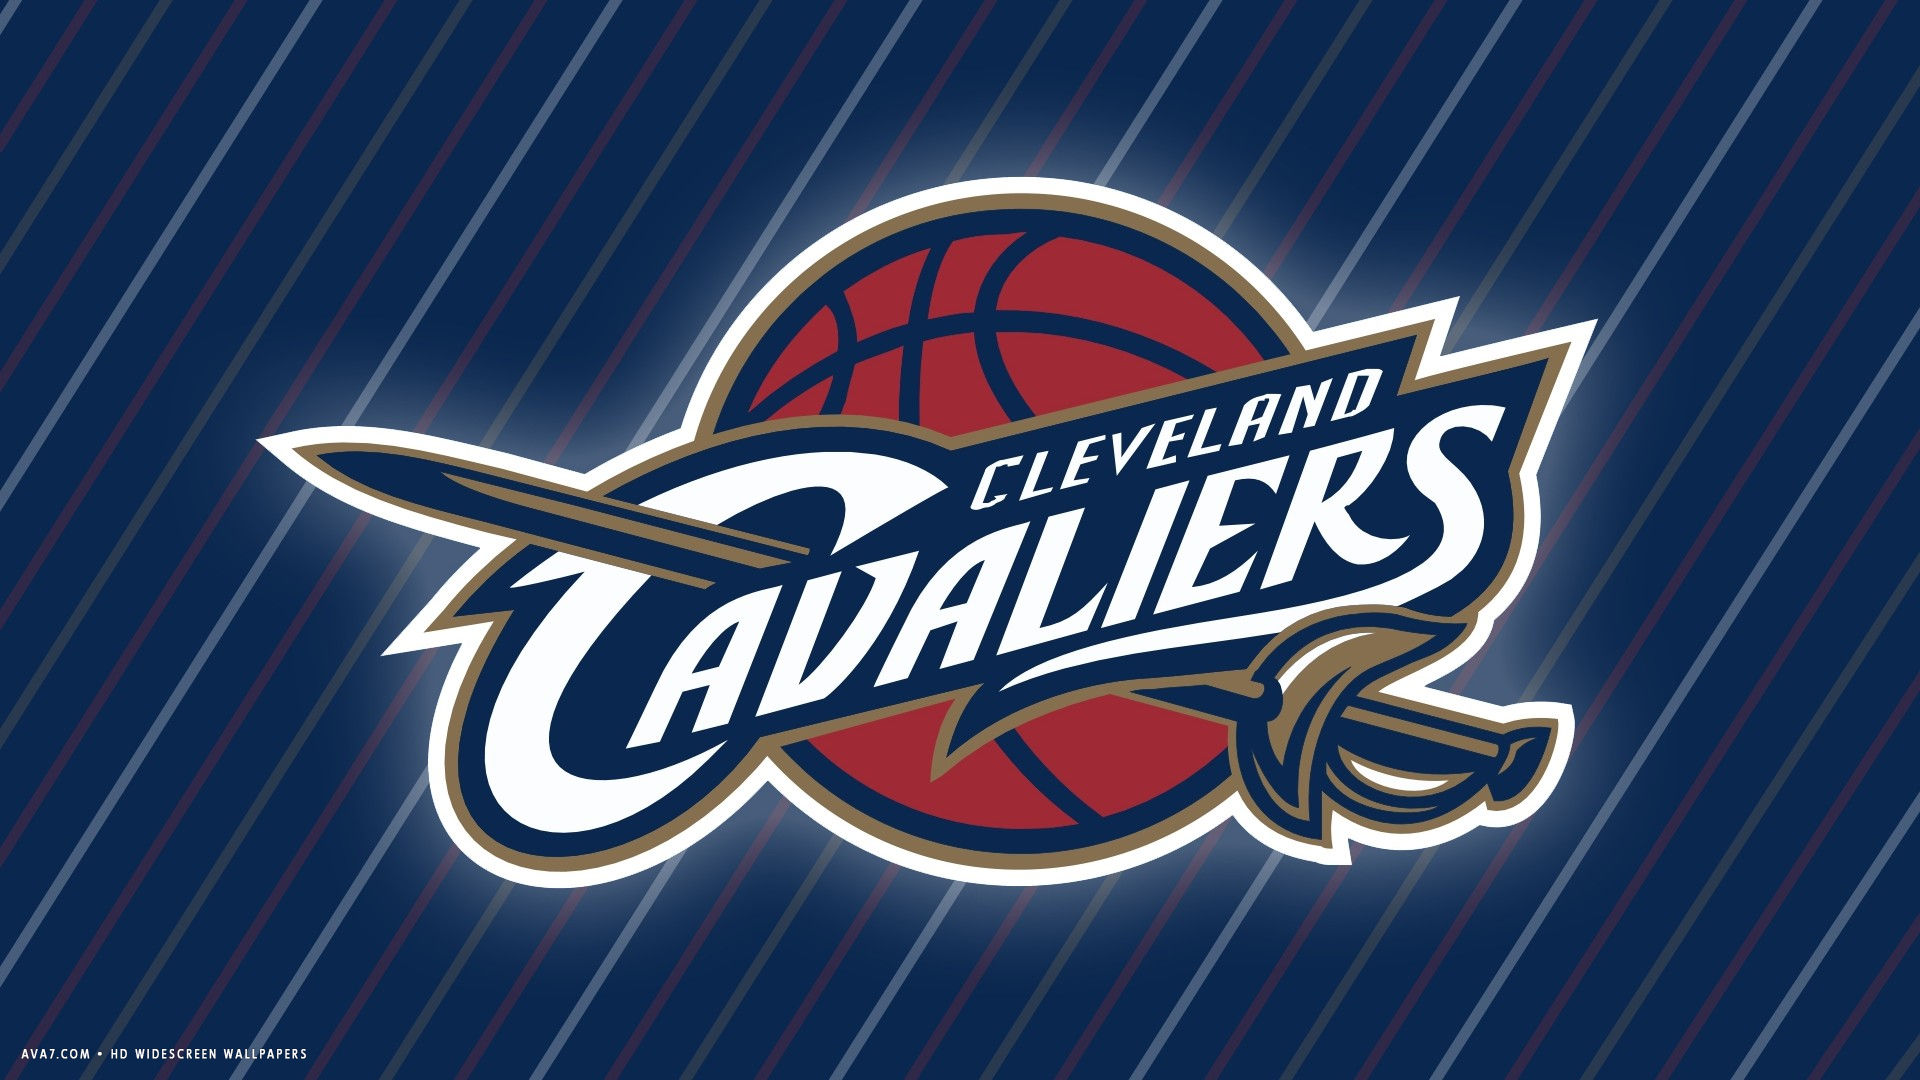 Cleveland Cavaliers Nba Basketball Team Hd Widescreen - Label - HD Wallpaper 